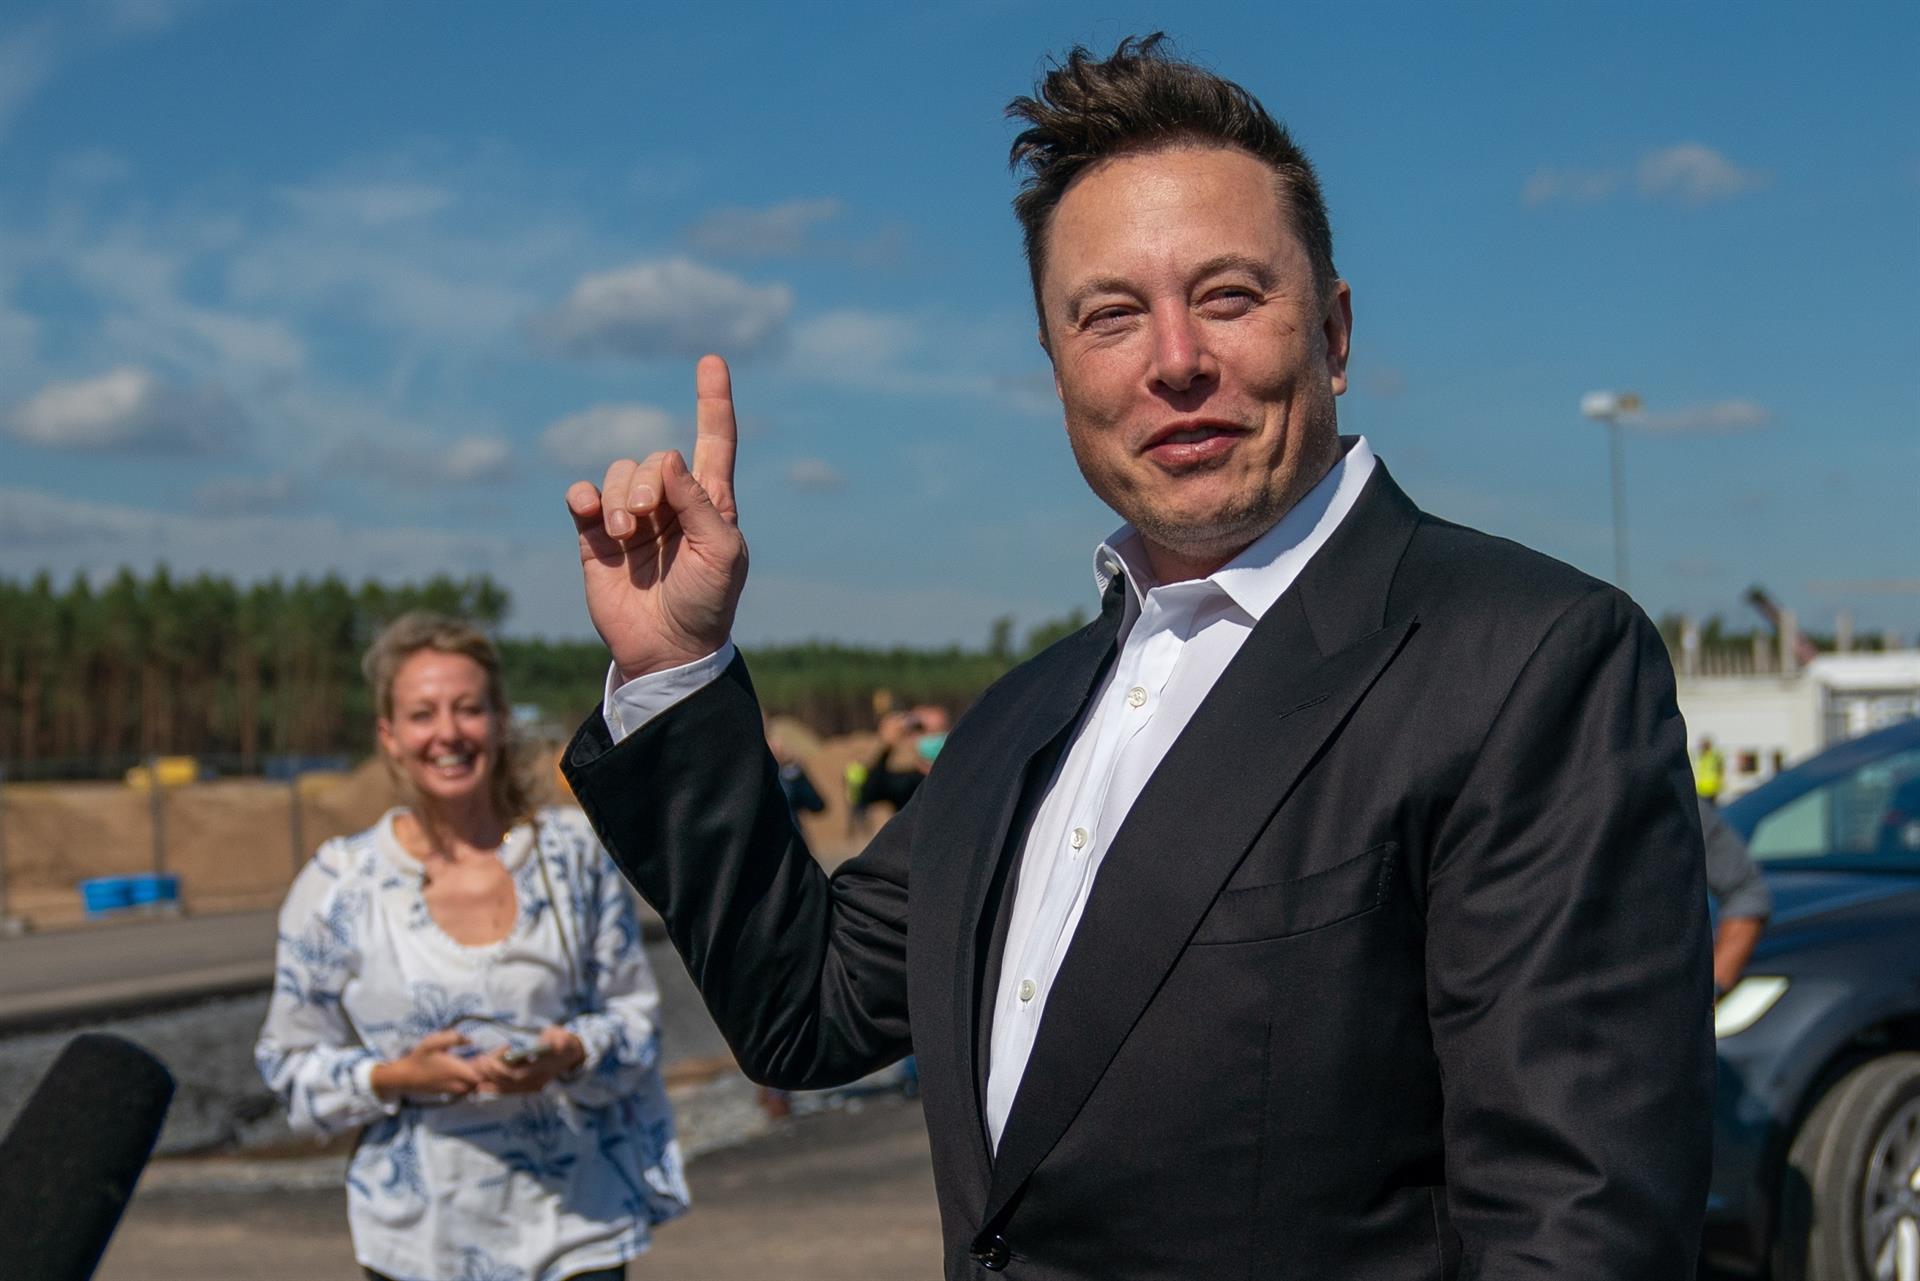 Fotografía de archivo fechada el 3 de septiembre de 2020 que muestra al magnate Elon Musk. EFE/EPA/ALEXANDER BECHER
